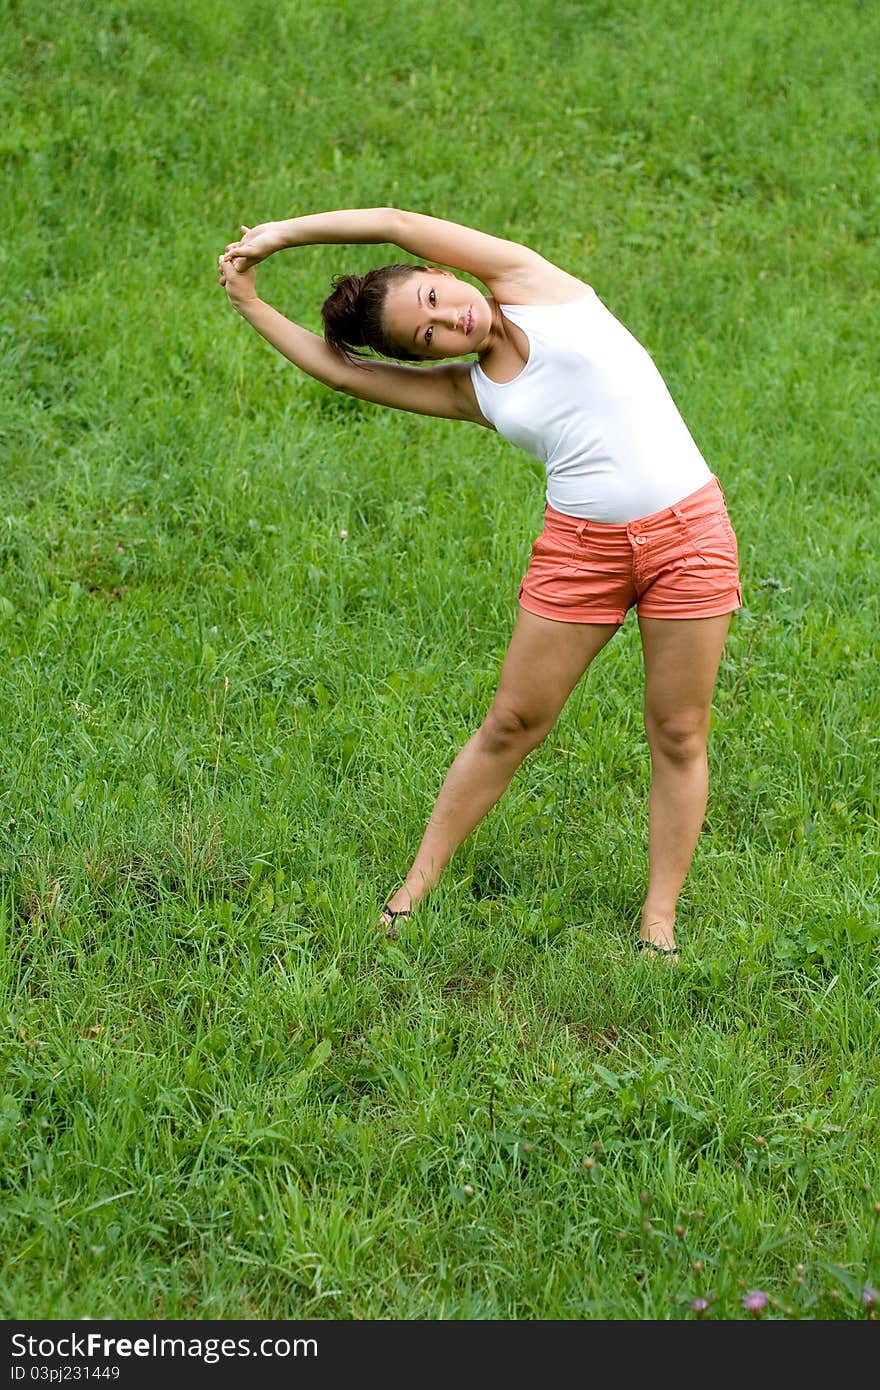 Girl doing exercises in park on grass